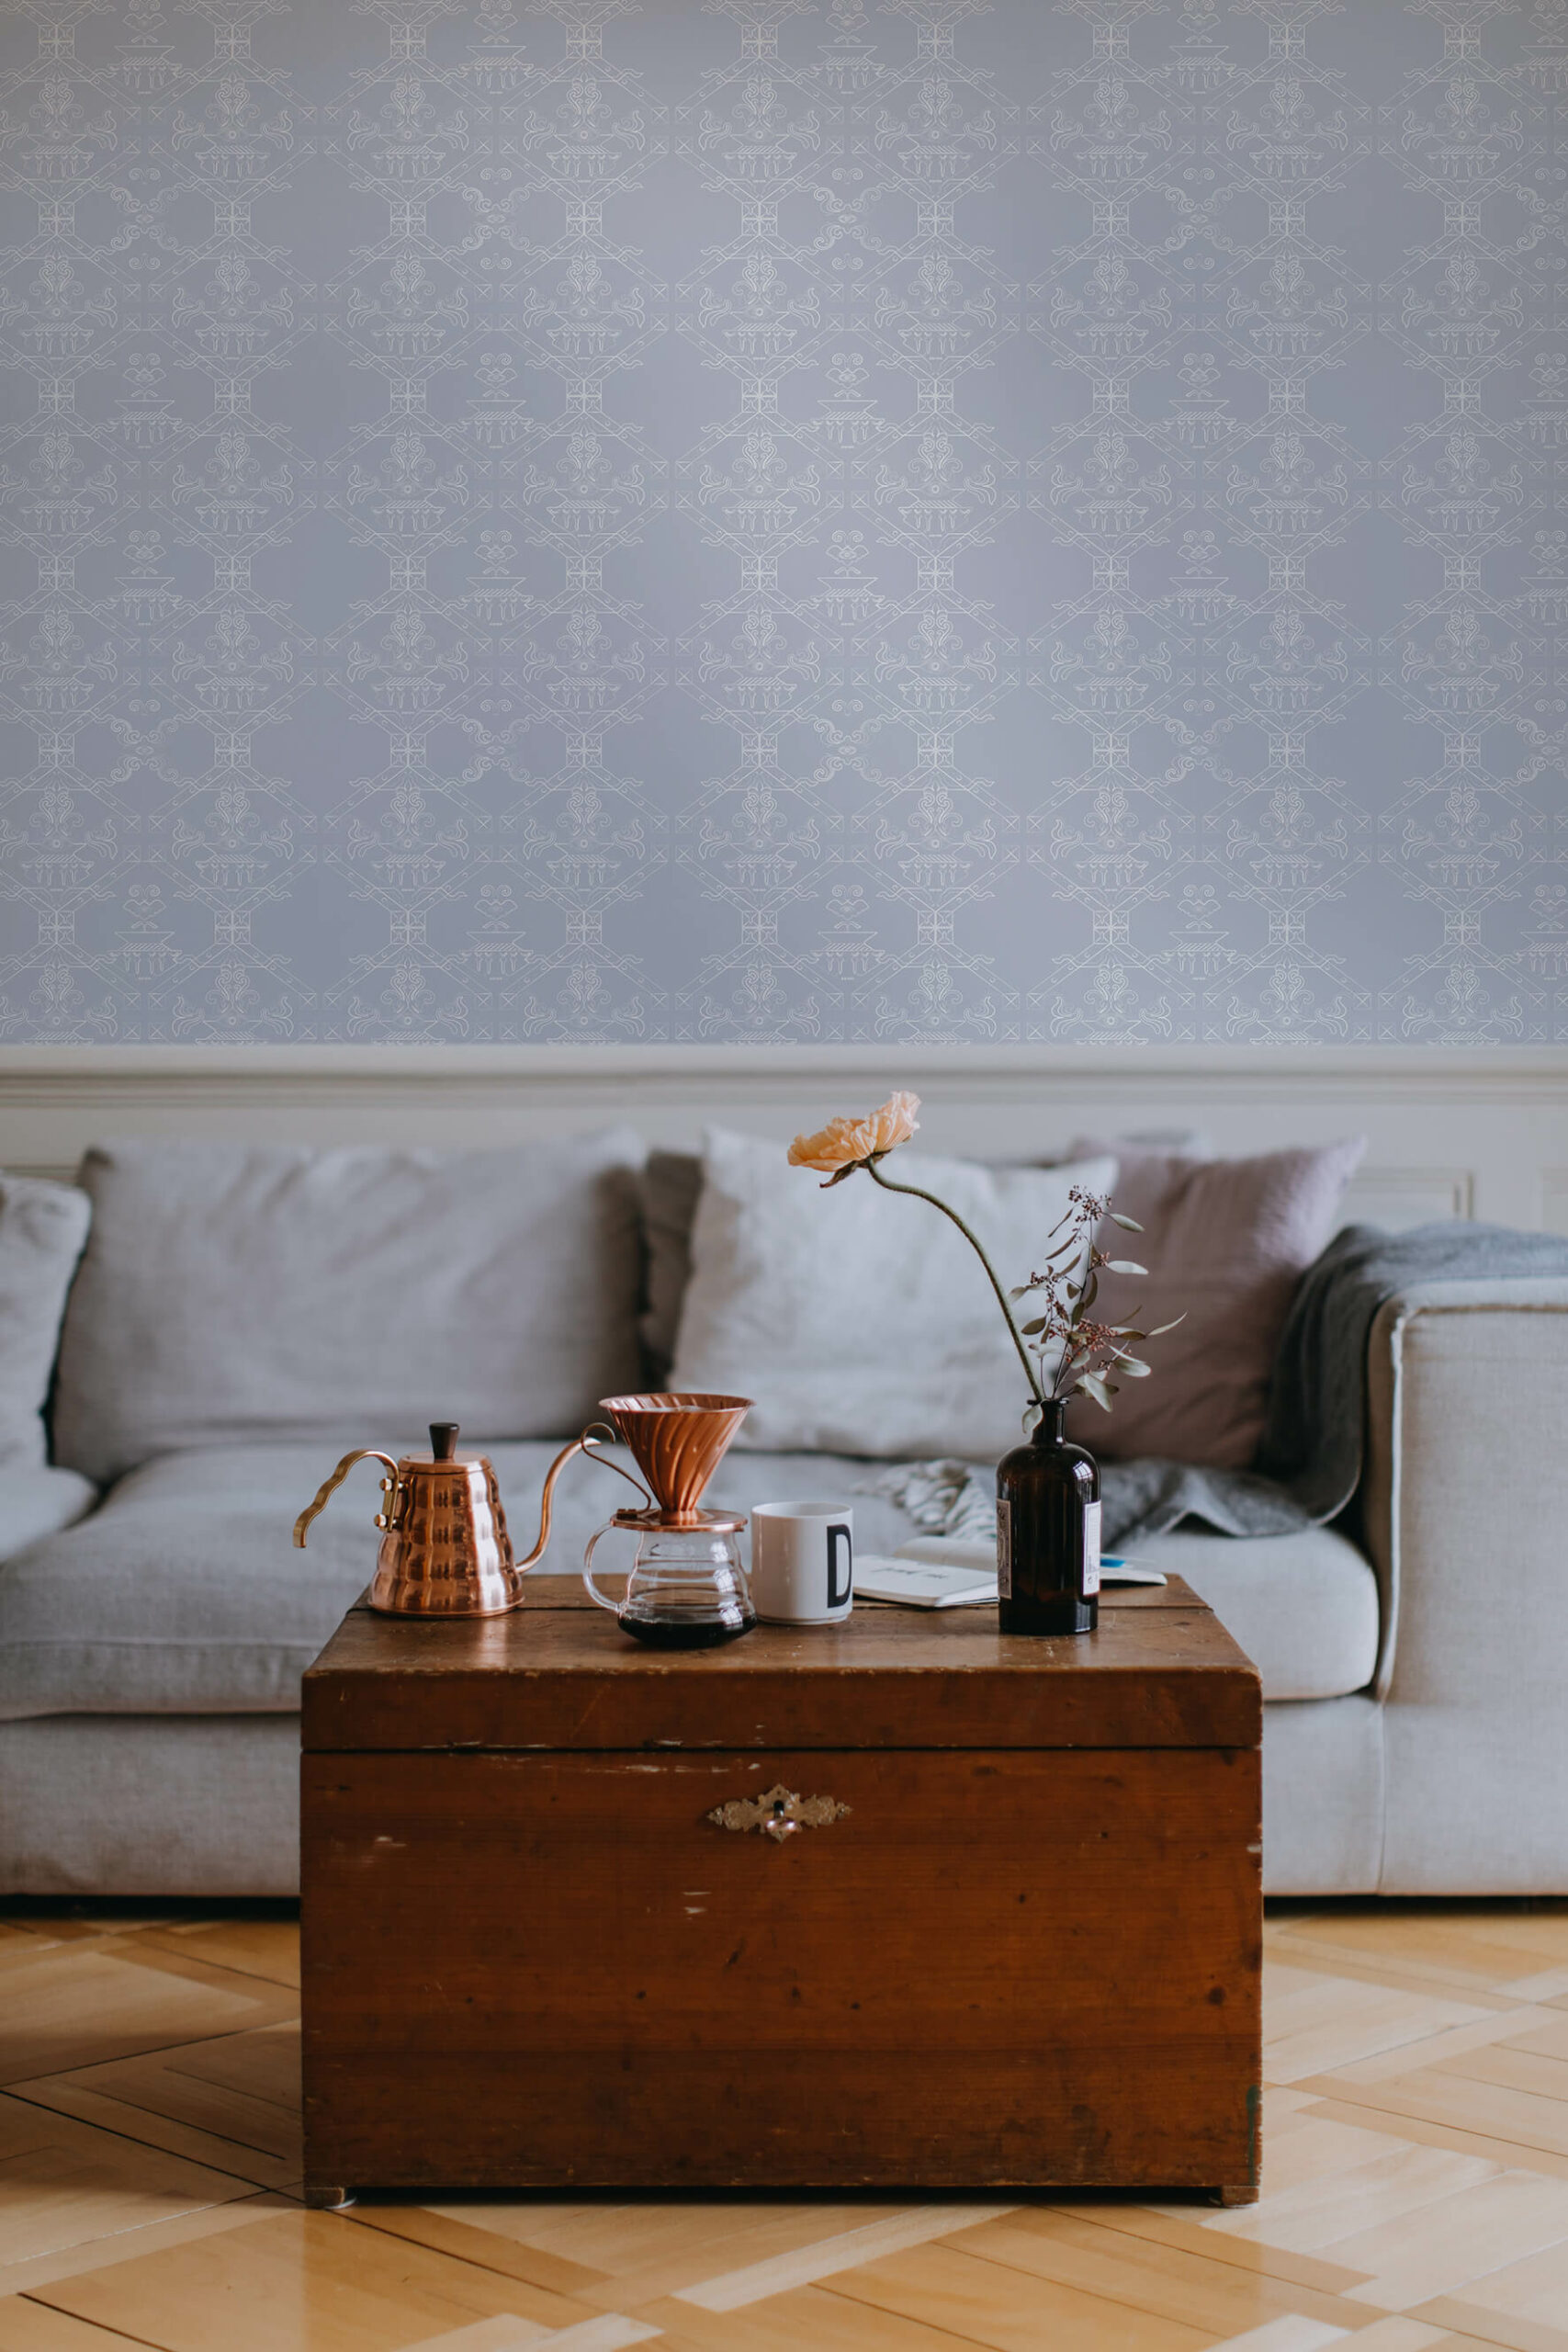 Ricamo-Powder-Grey-MaVoix-wallpaper-living-room